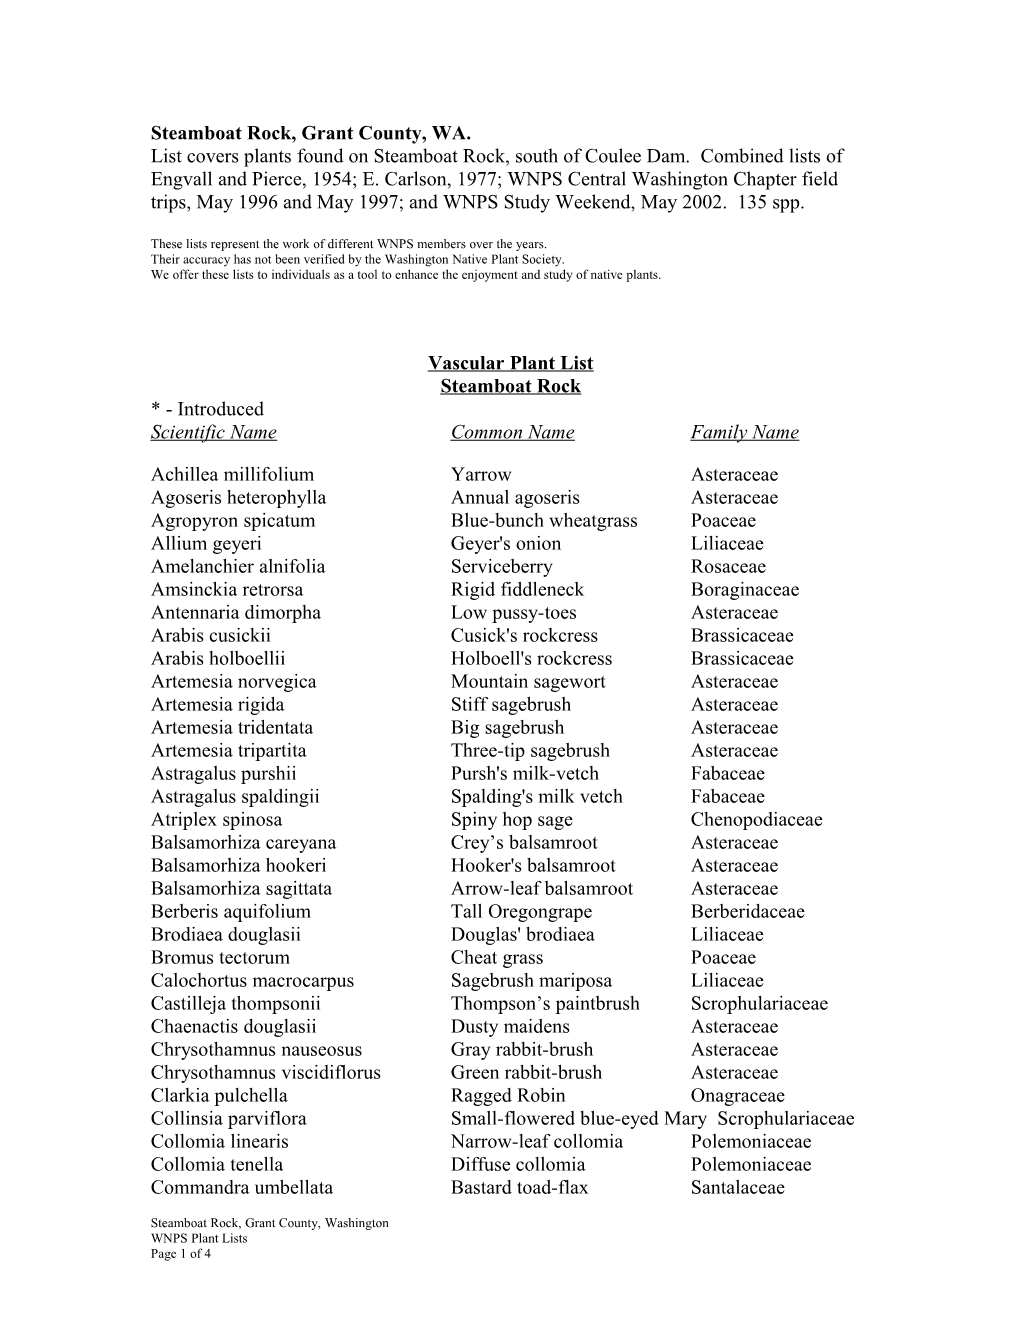 Vascular Plant List s5